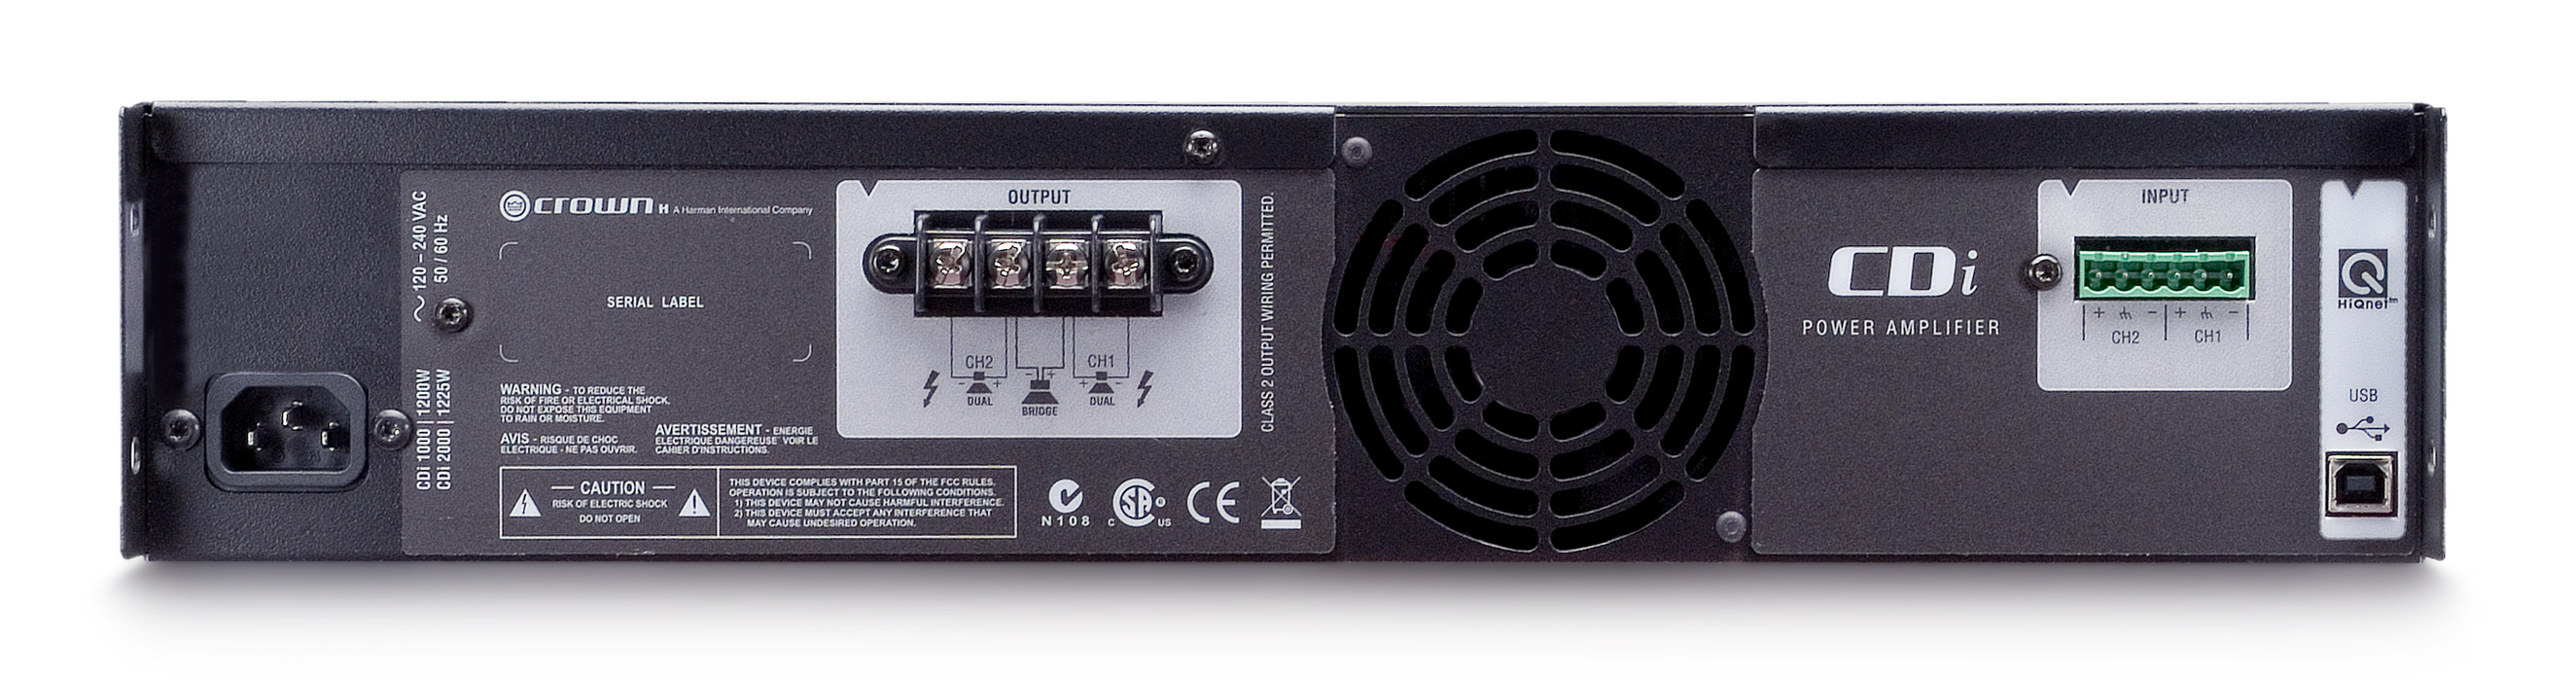 Crown CDI 2000 - Amplificateur de puissance commercial 2 canaux 800W 4 Ohms, 8 Ohms : 2 x 475 W ou 2 Ohms : 2 x 1000 W* et 2 x 800 70Vrms, extrêmement polyvalent, il peut être bridgé pour atteindre 2000W